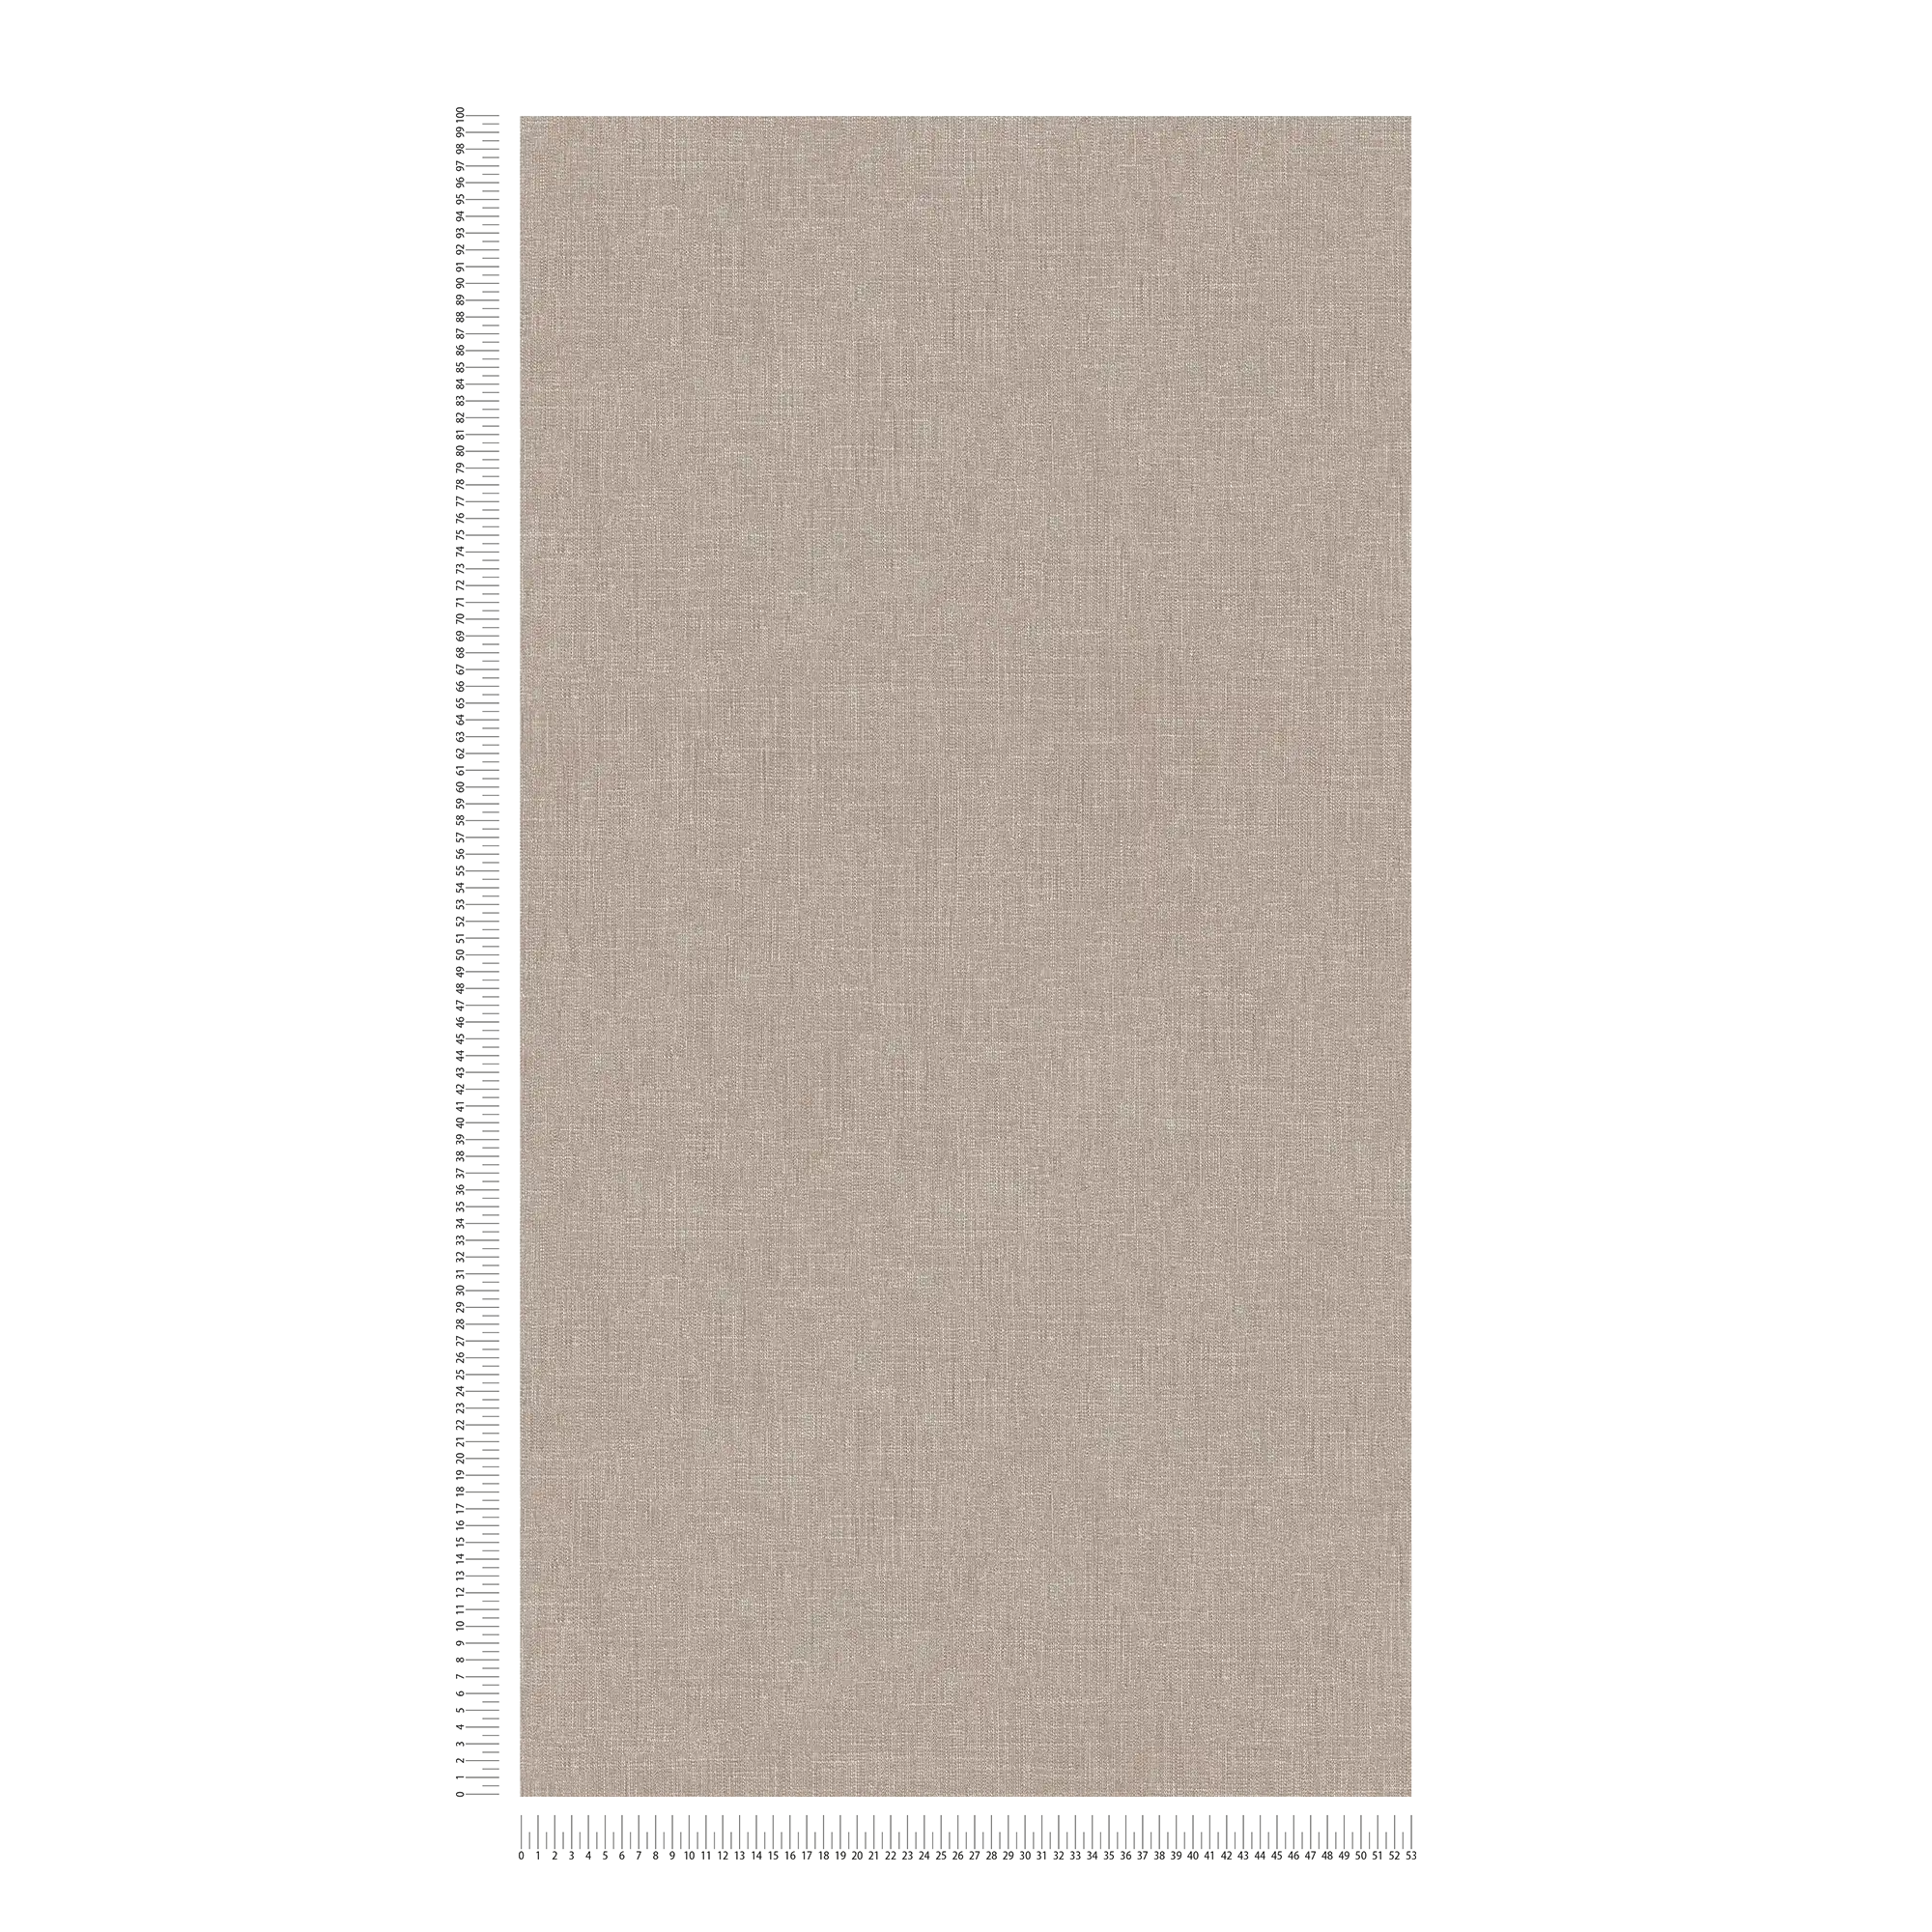             Papier peint chiné gris avec aspect textile & structure
        